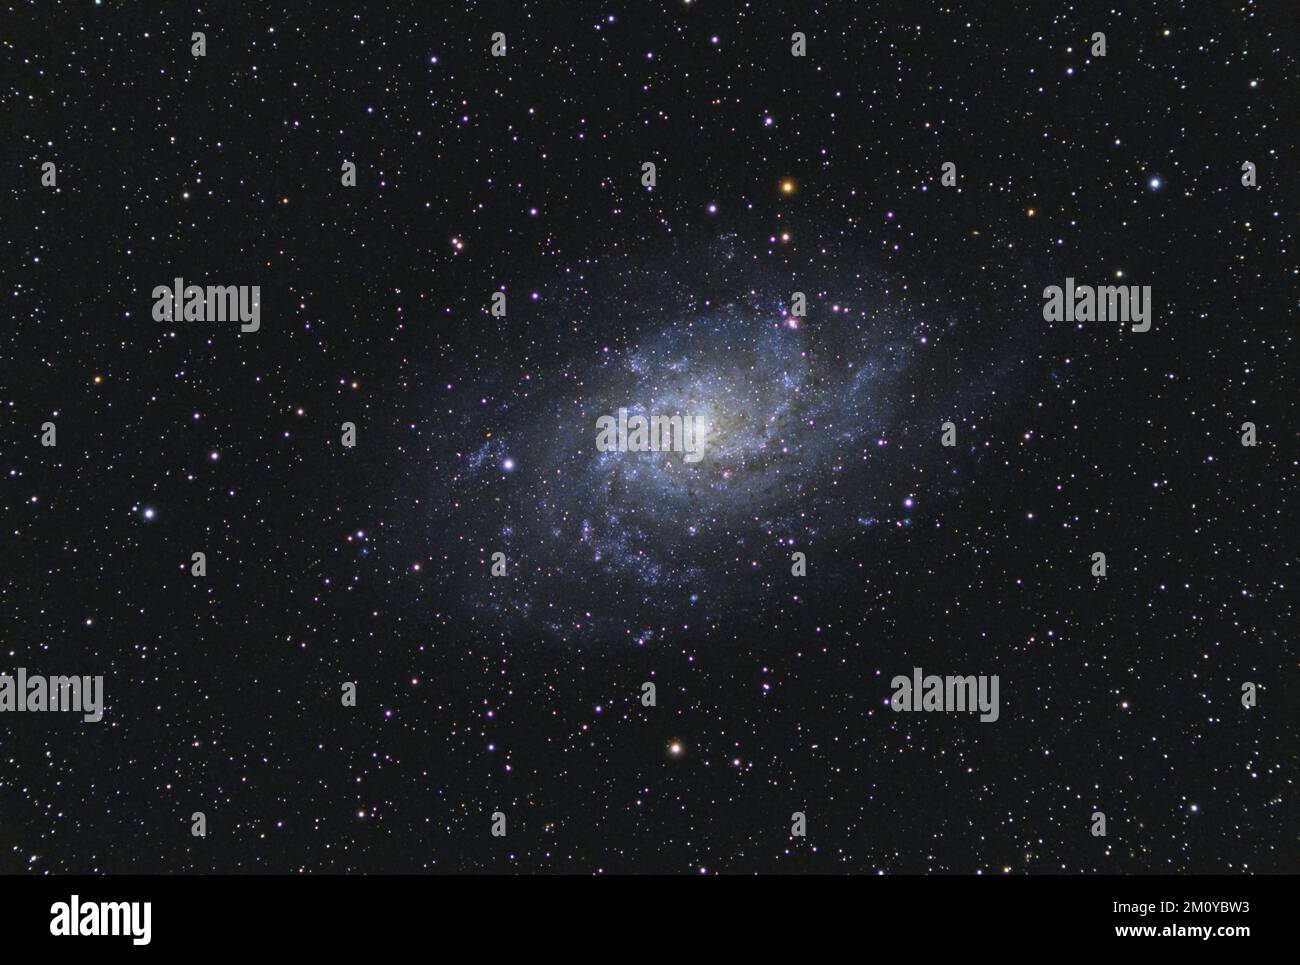 Das Triangulum Galaxy M33 im Sternbild Triangulum mit Nebel, offenem Cluster, Globulärem Cluster und Sternen Stockfoto